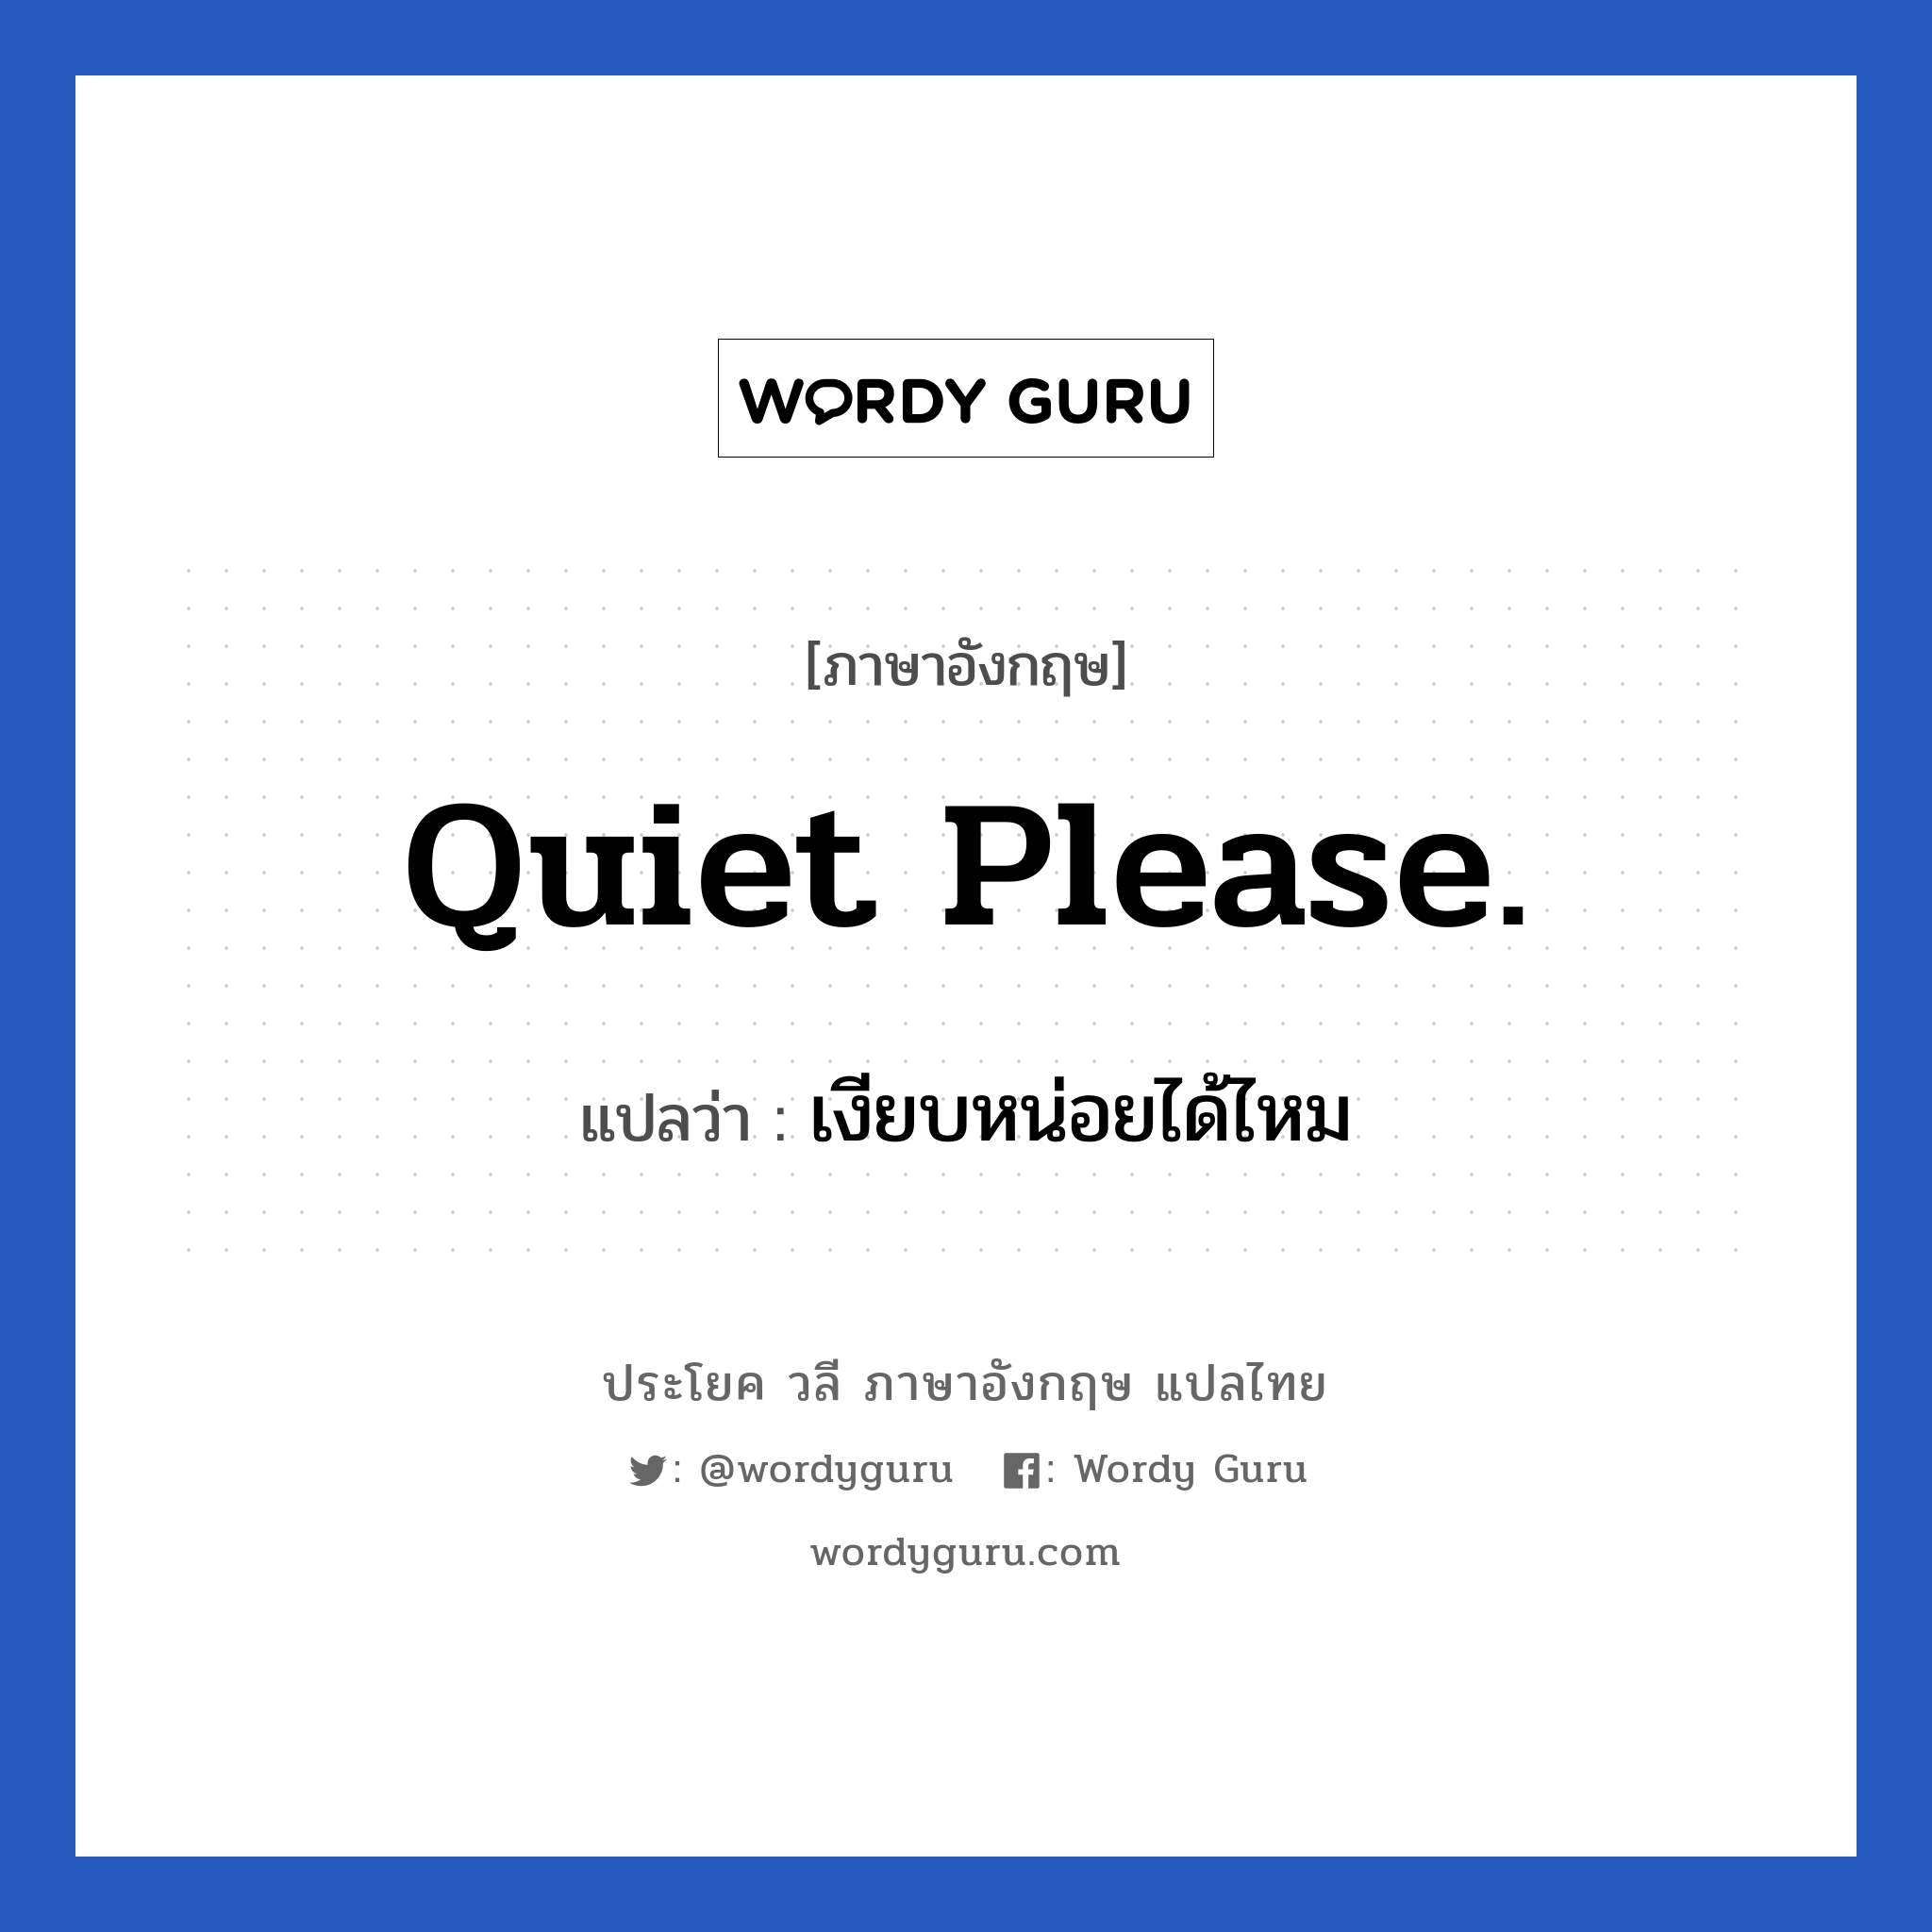 เงียบหน่อยได้ไหม ภาษาอังกฤษ?, วลีภาษาอังกฤษ เงียบหน่อยได้ไหม แปลว่า Quiet please.